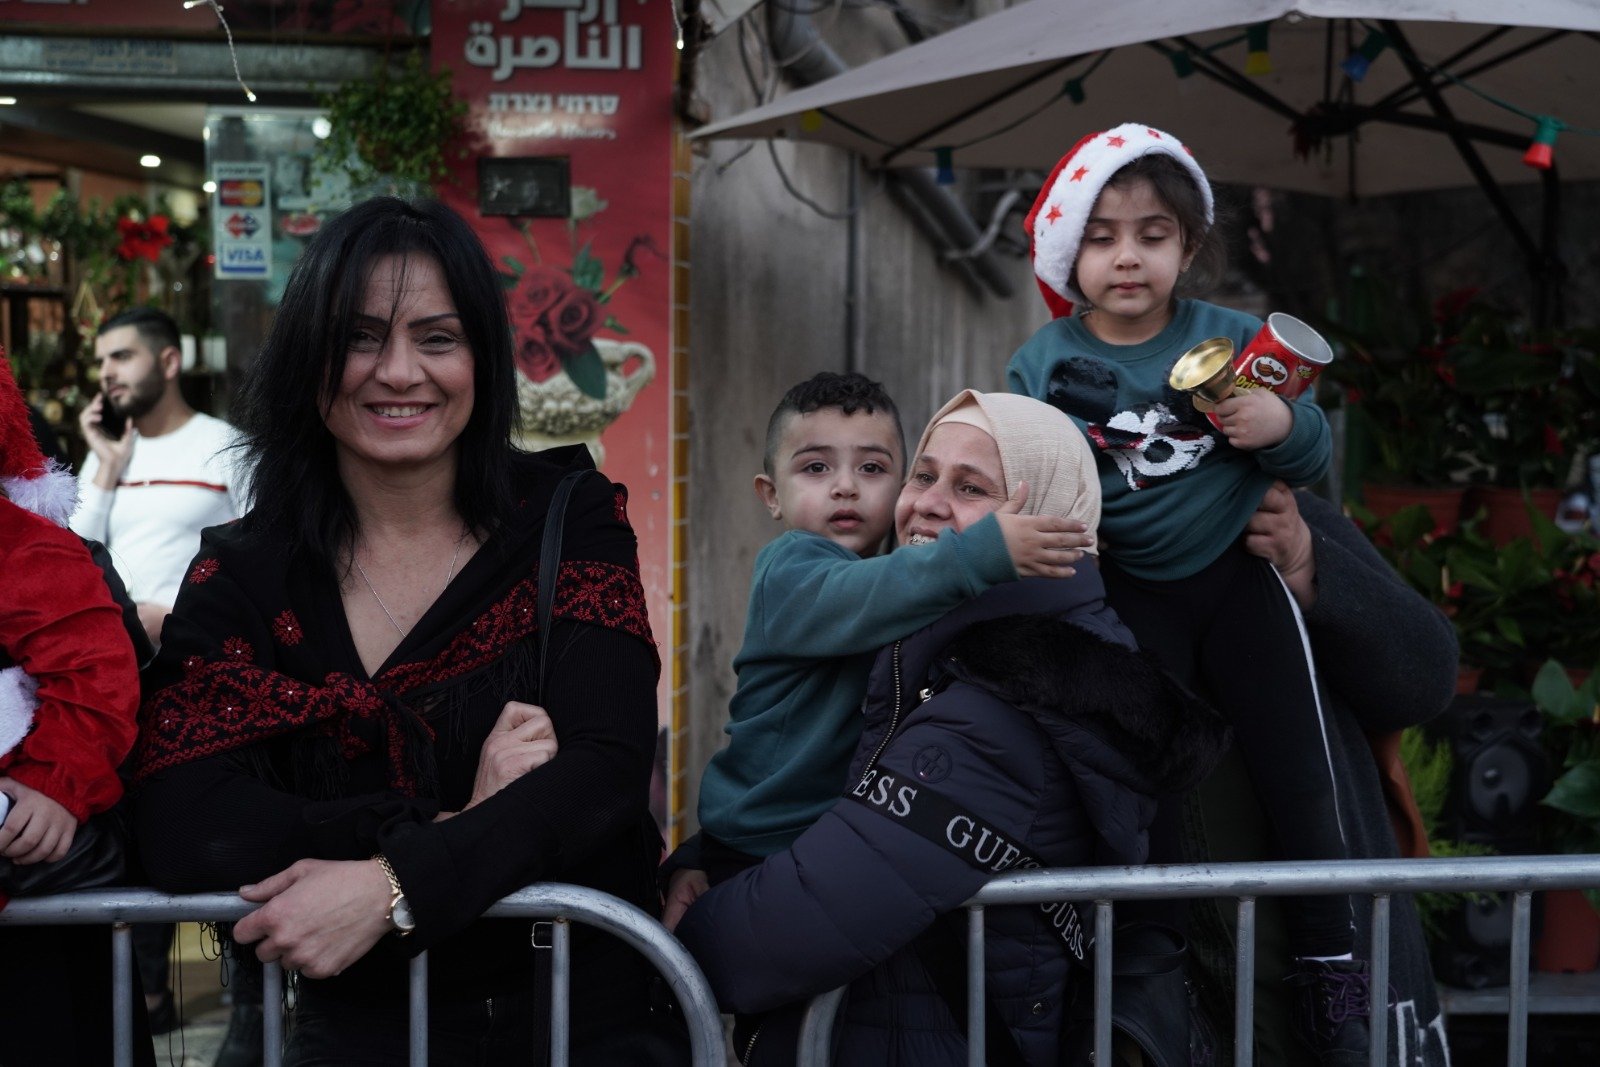 بالصور: "بكرا" يرصد فرحة استقبال الميلاد في الناصرة -118